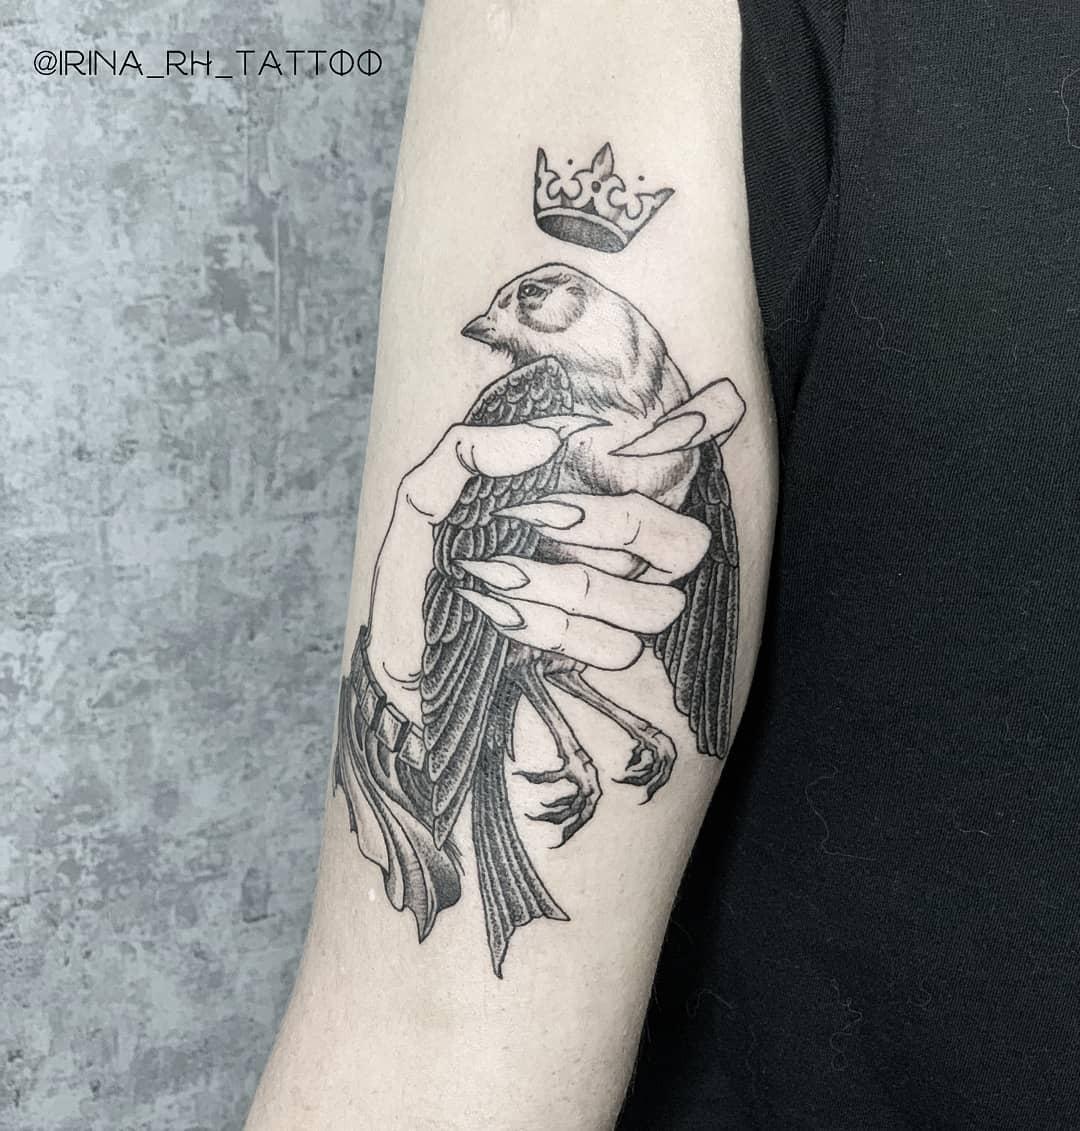 Inksearch tattoo Irina RH